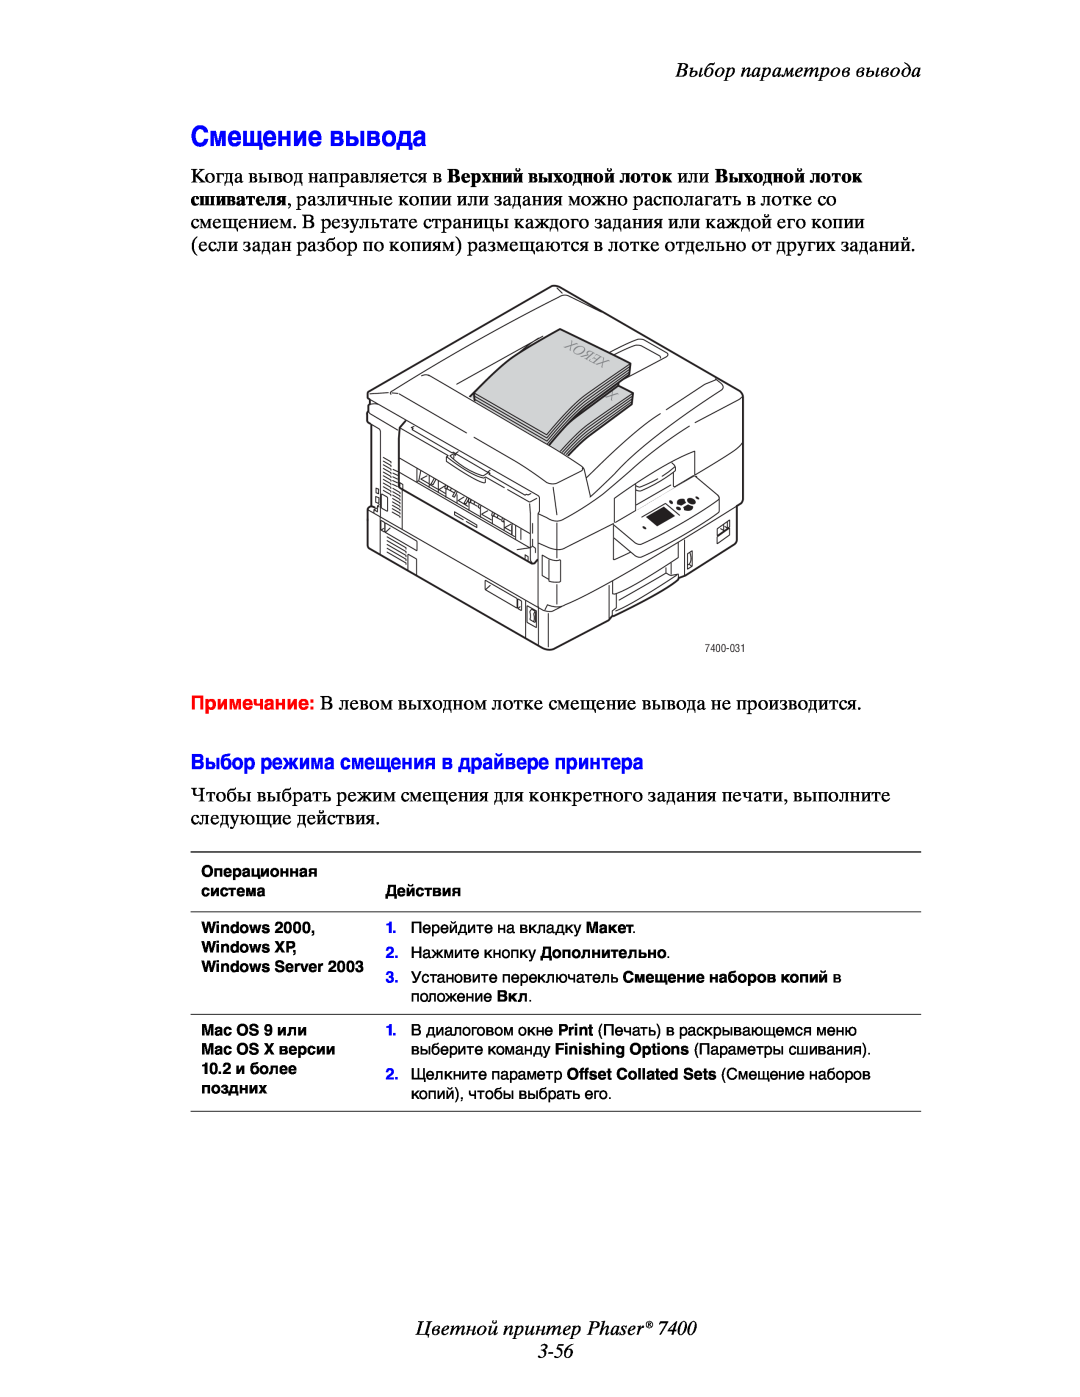 Xerox 7400 manual Смещение вывода, Выбор режима смещения в драйвере принтера, Цветной принтер Phaser 3-56 